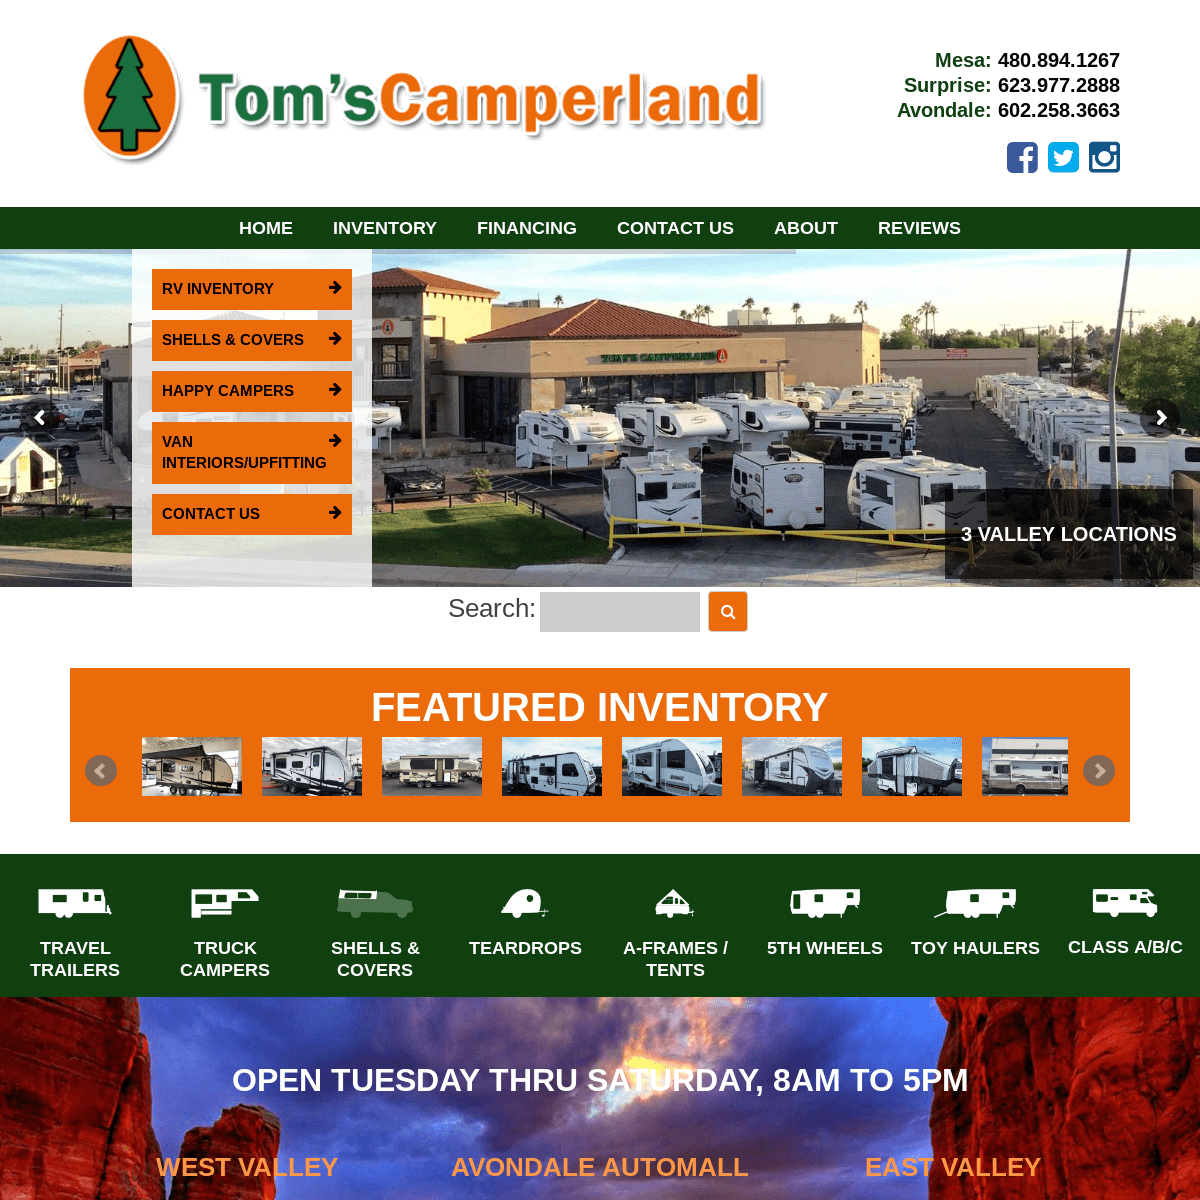 Home - Tom's Camperland